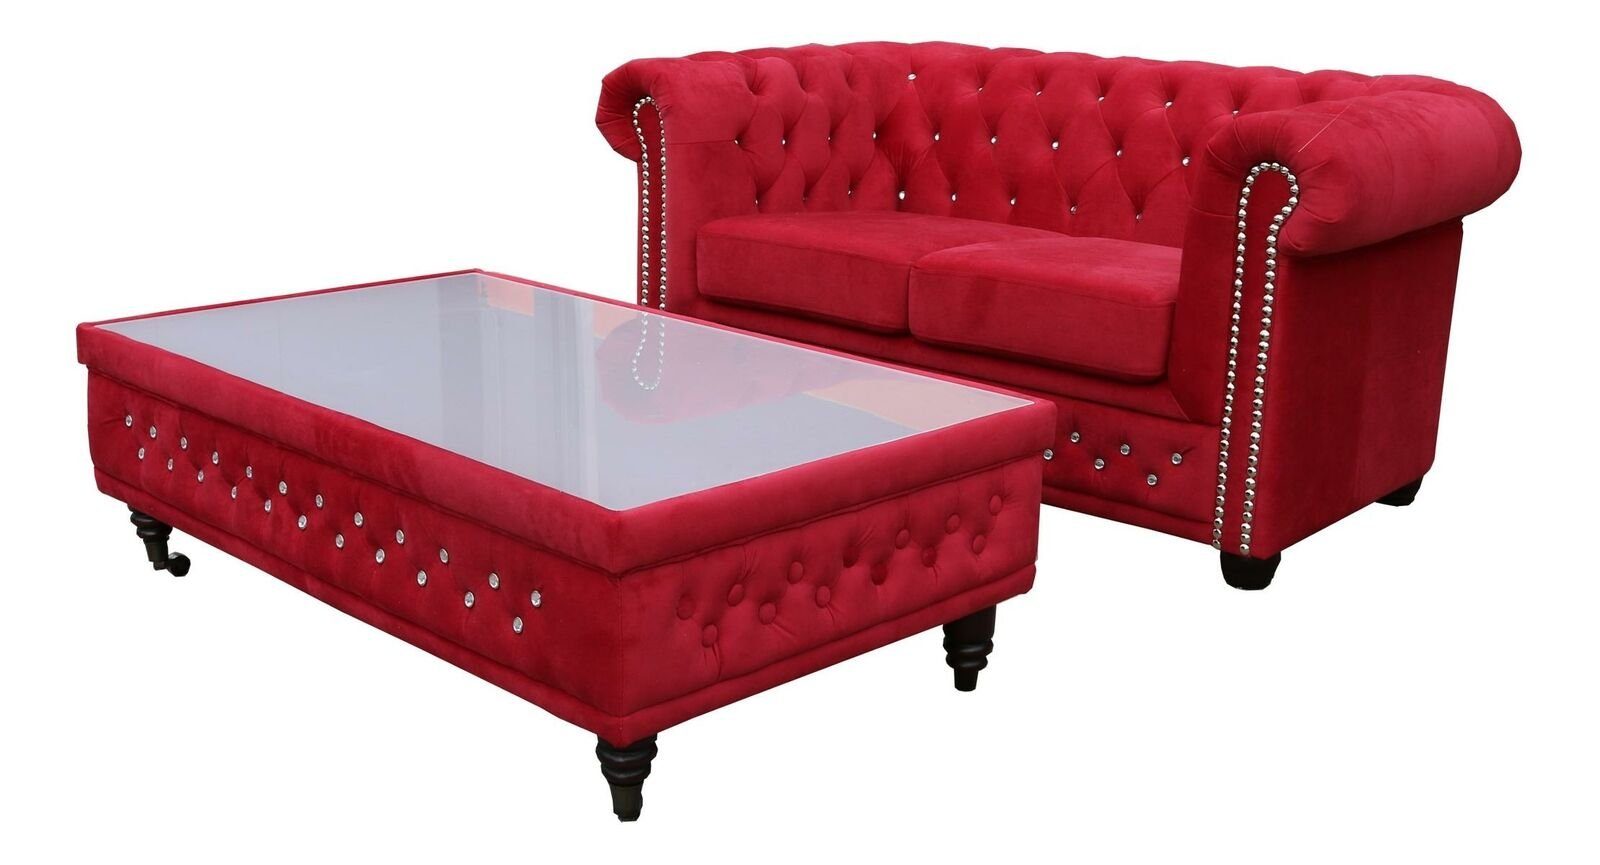 JVmoebel Couchtisch Roter Chesterfield Design Couchtisch Glastisch Tisch (Nur 2 Sitzer), Made in Europe